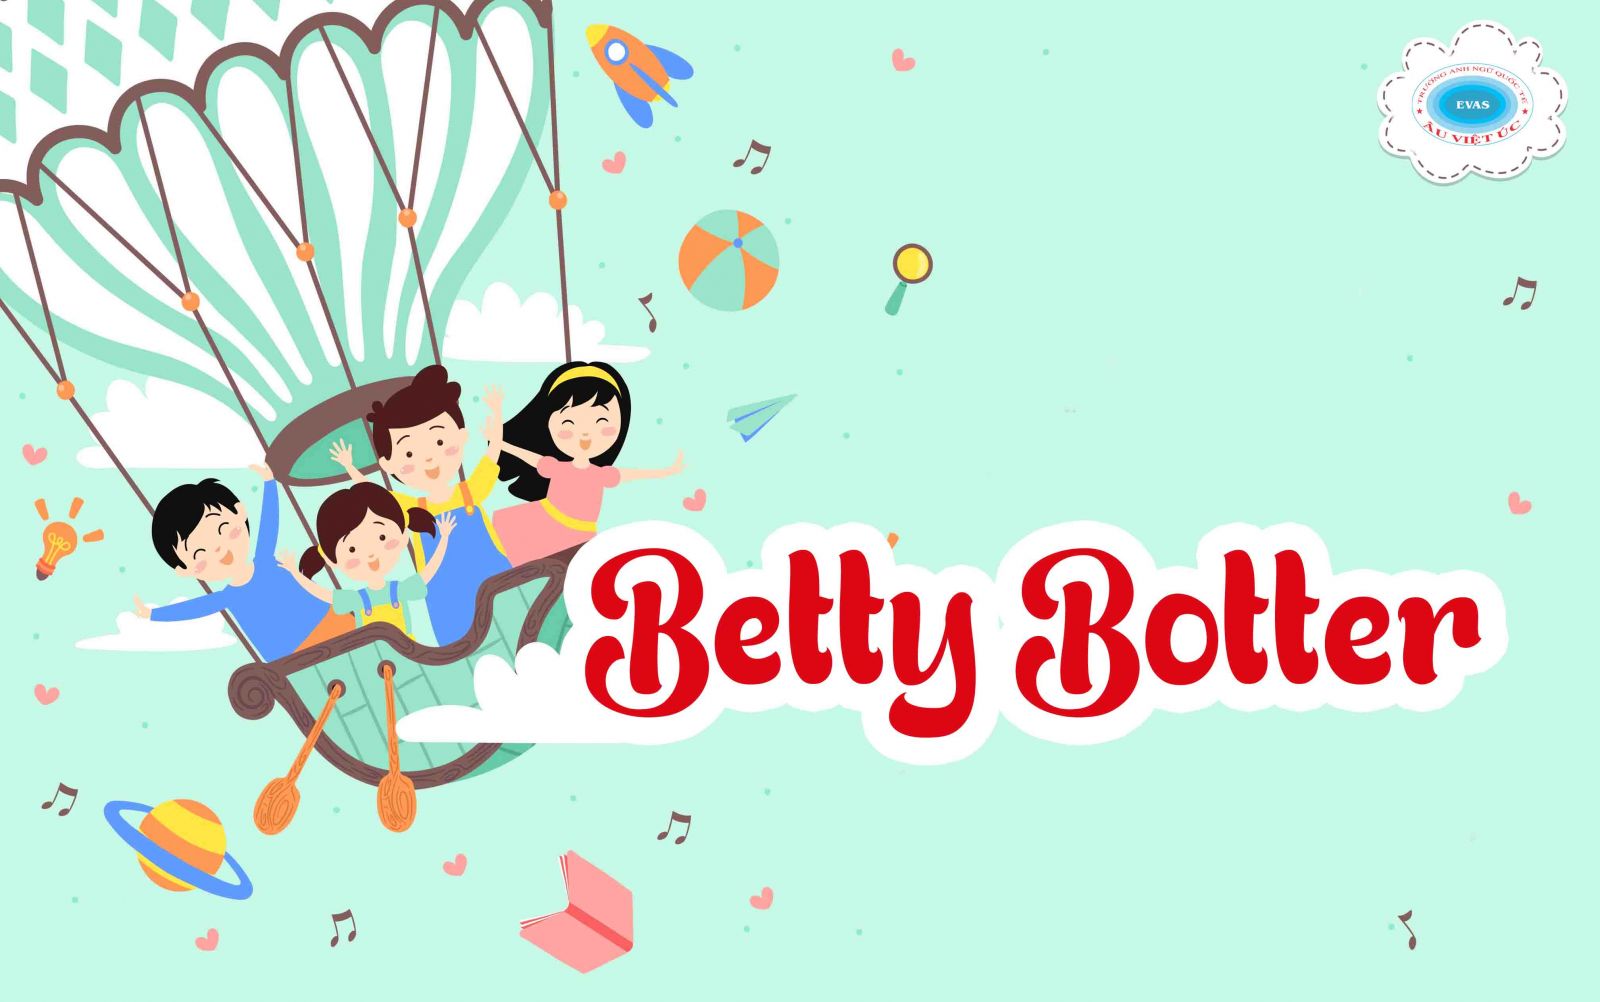 Betty Botter